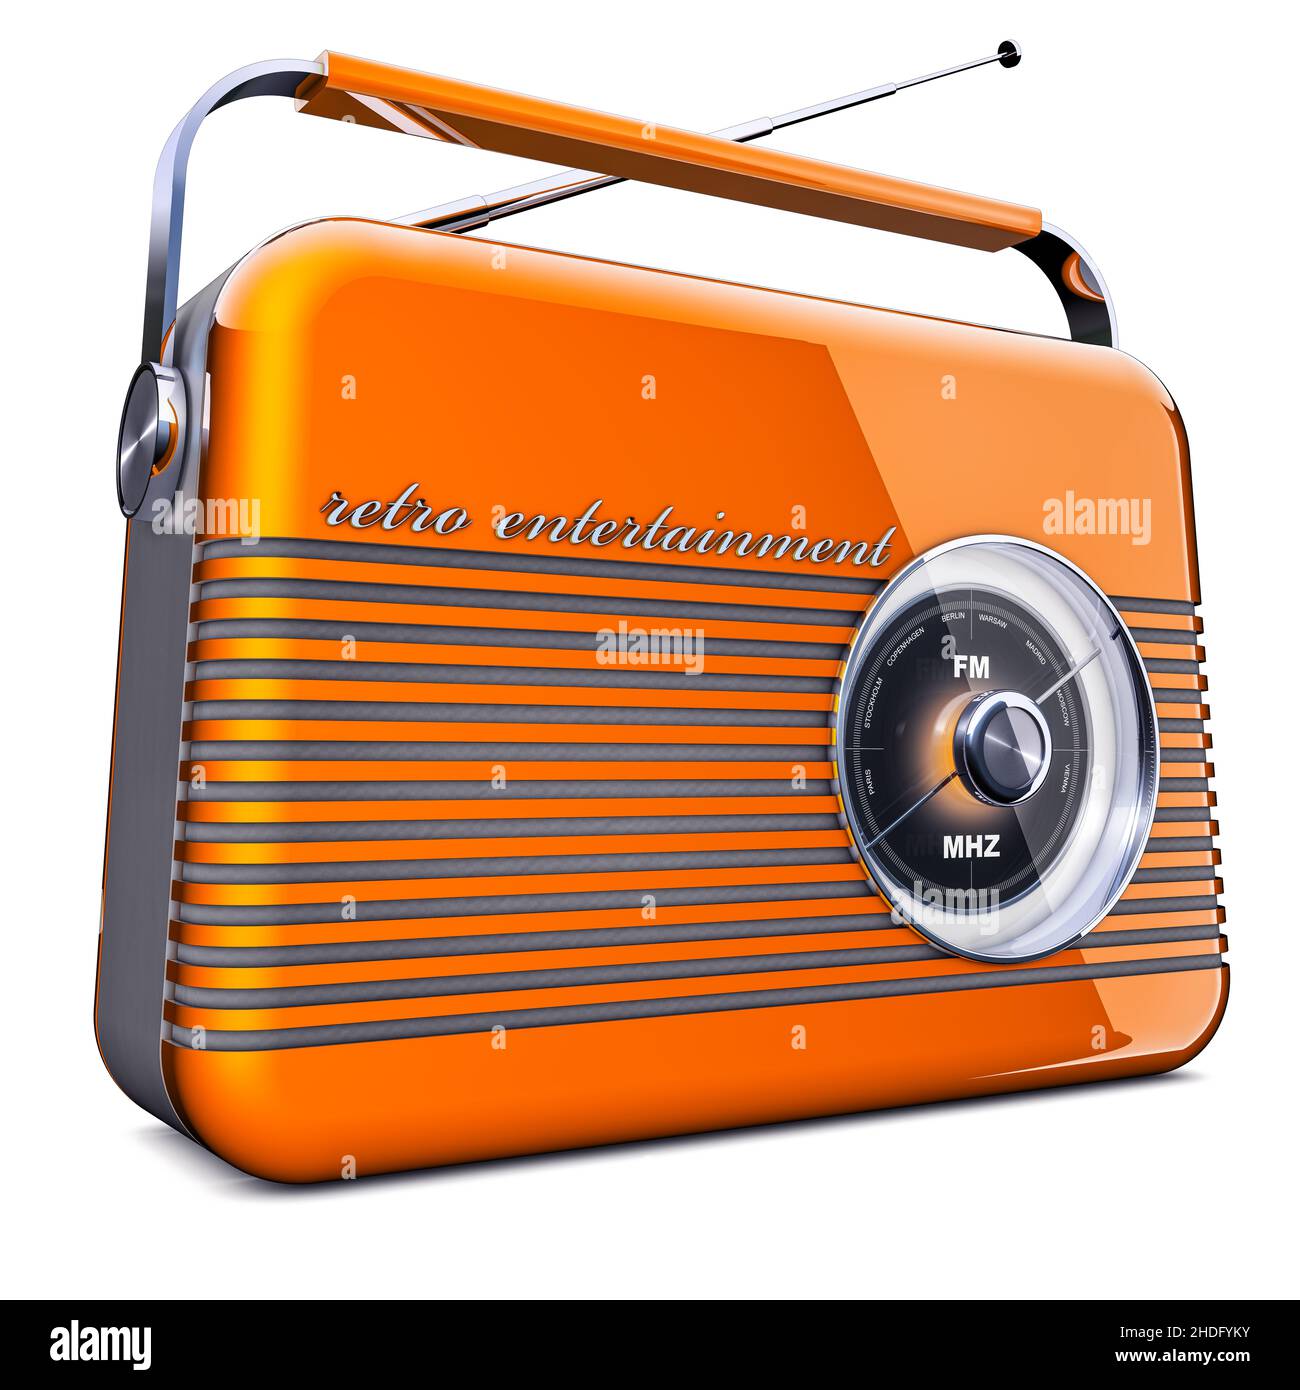 Vintage Portable Transistor Radio Isolated on White Background Stock Photo  by ©Qingwa 7896491